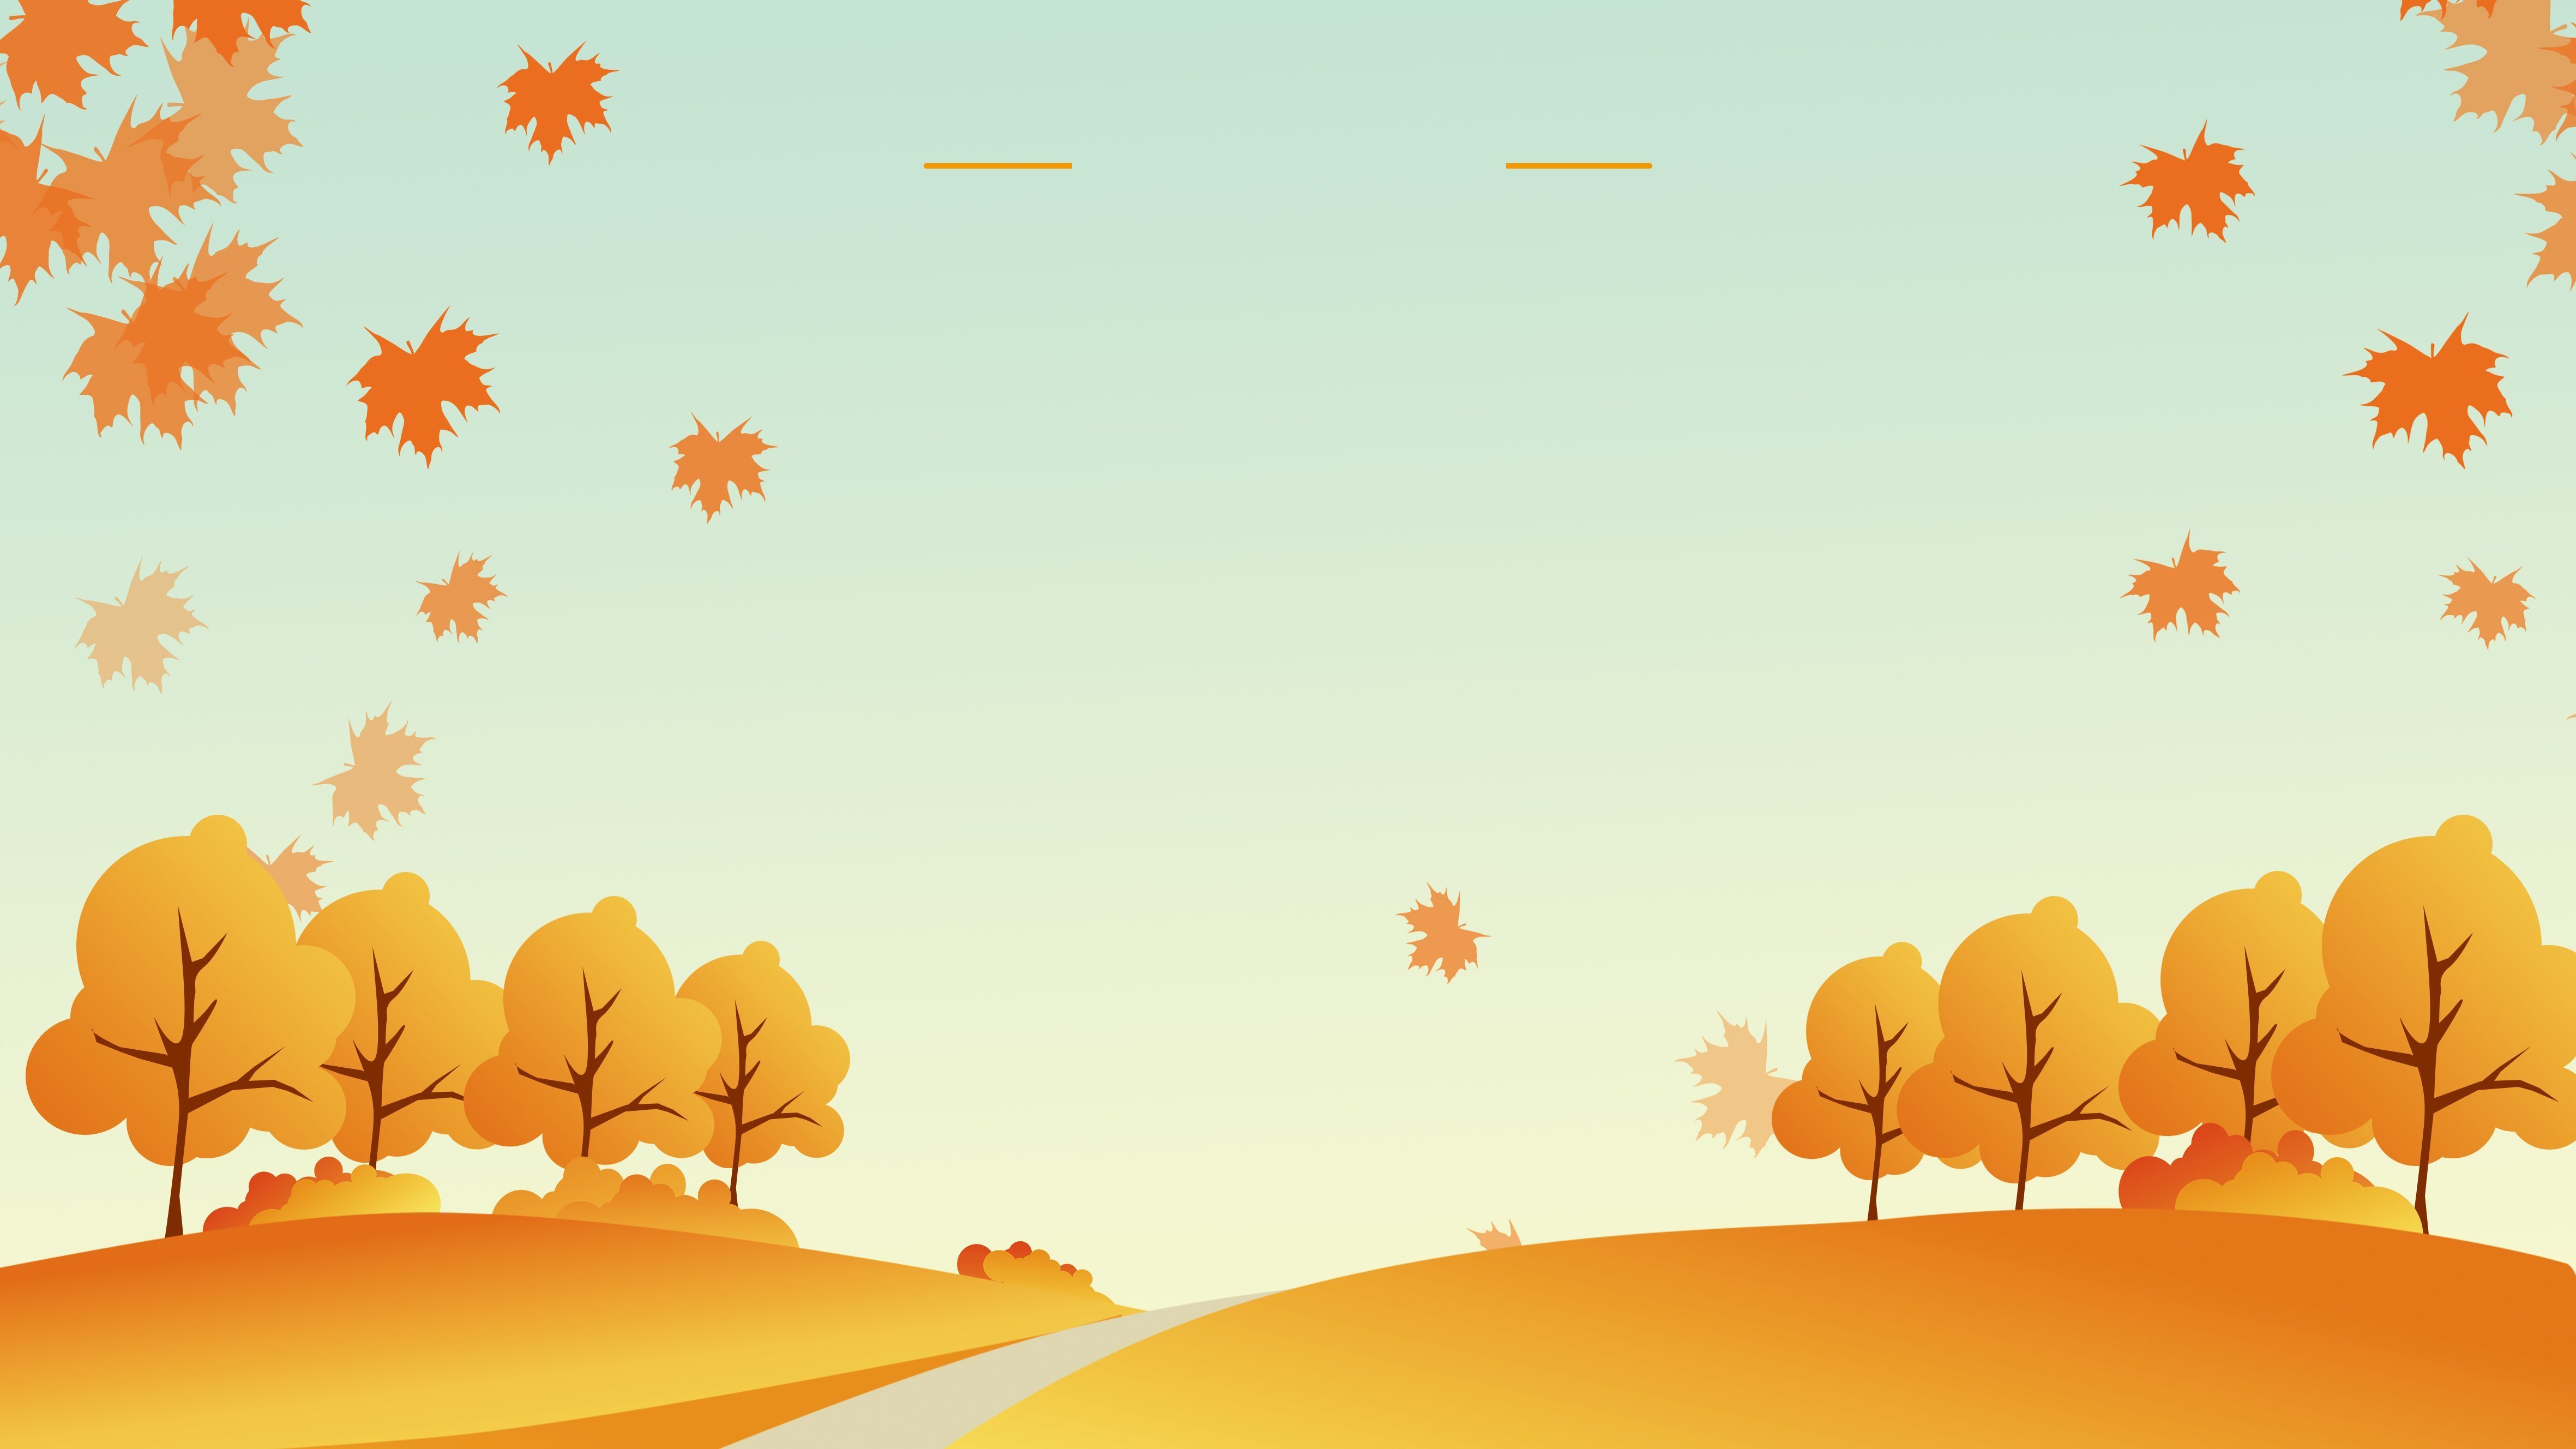 Фон осень: векторные изображения и иллюстрации, которые можно скачать бесплатно | Freepik